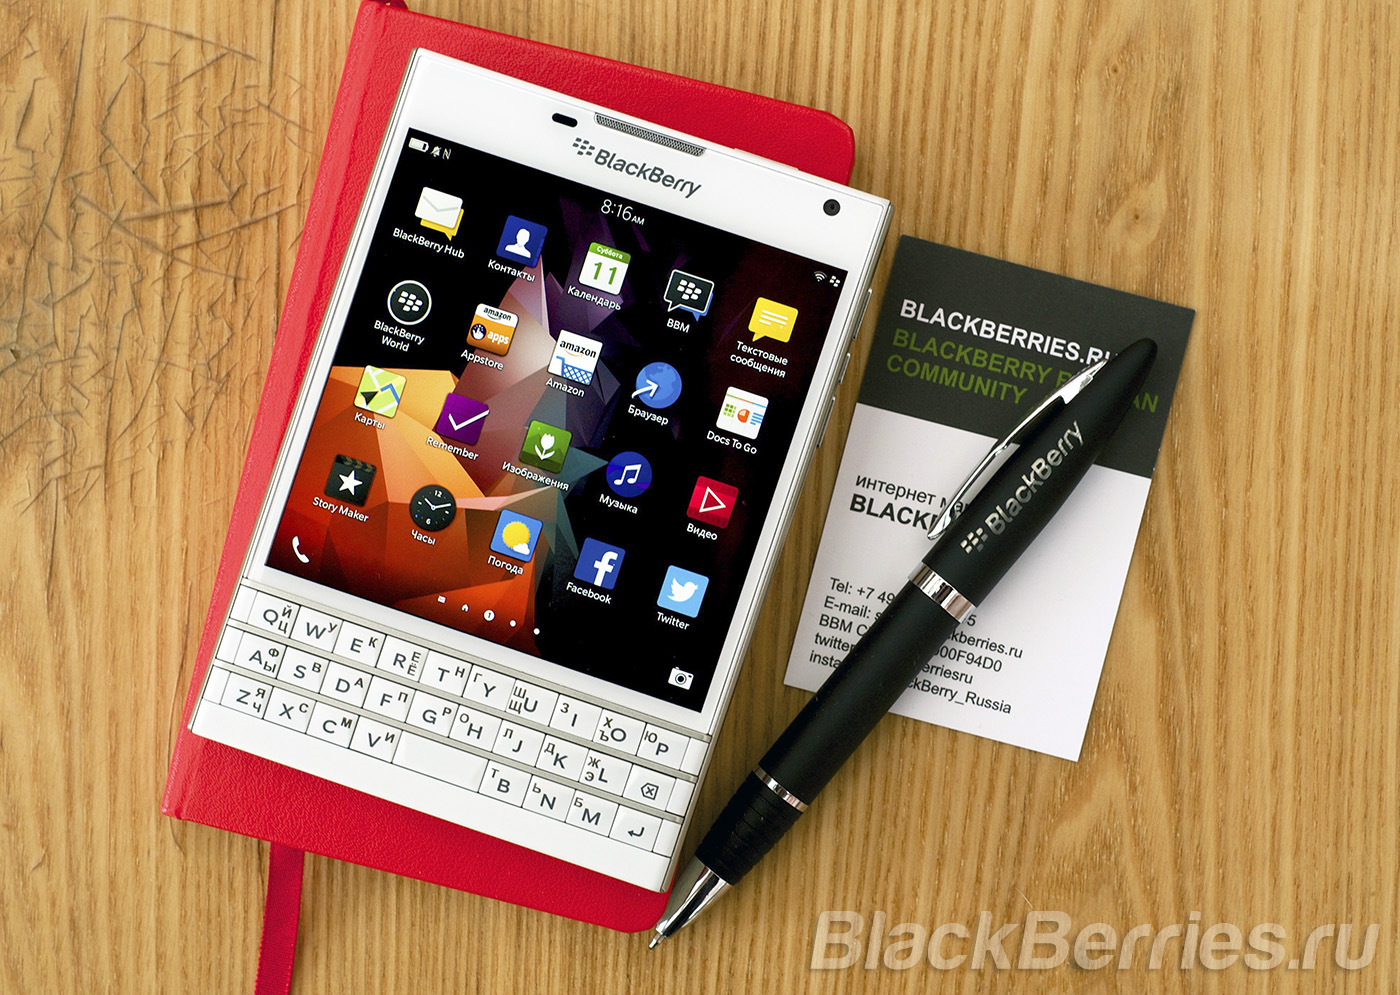 BlackBerry-Passport-Apps-11-07-14